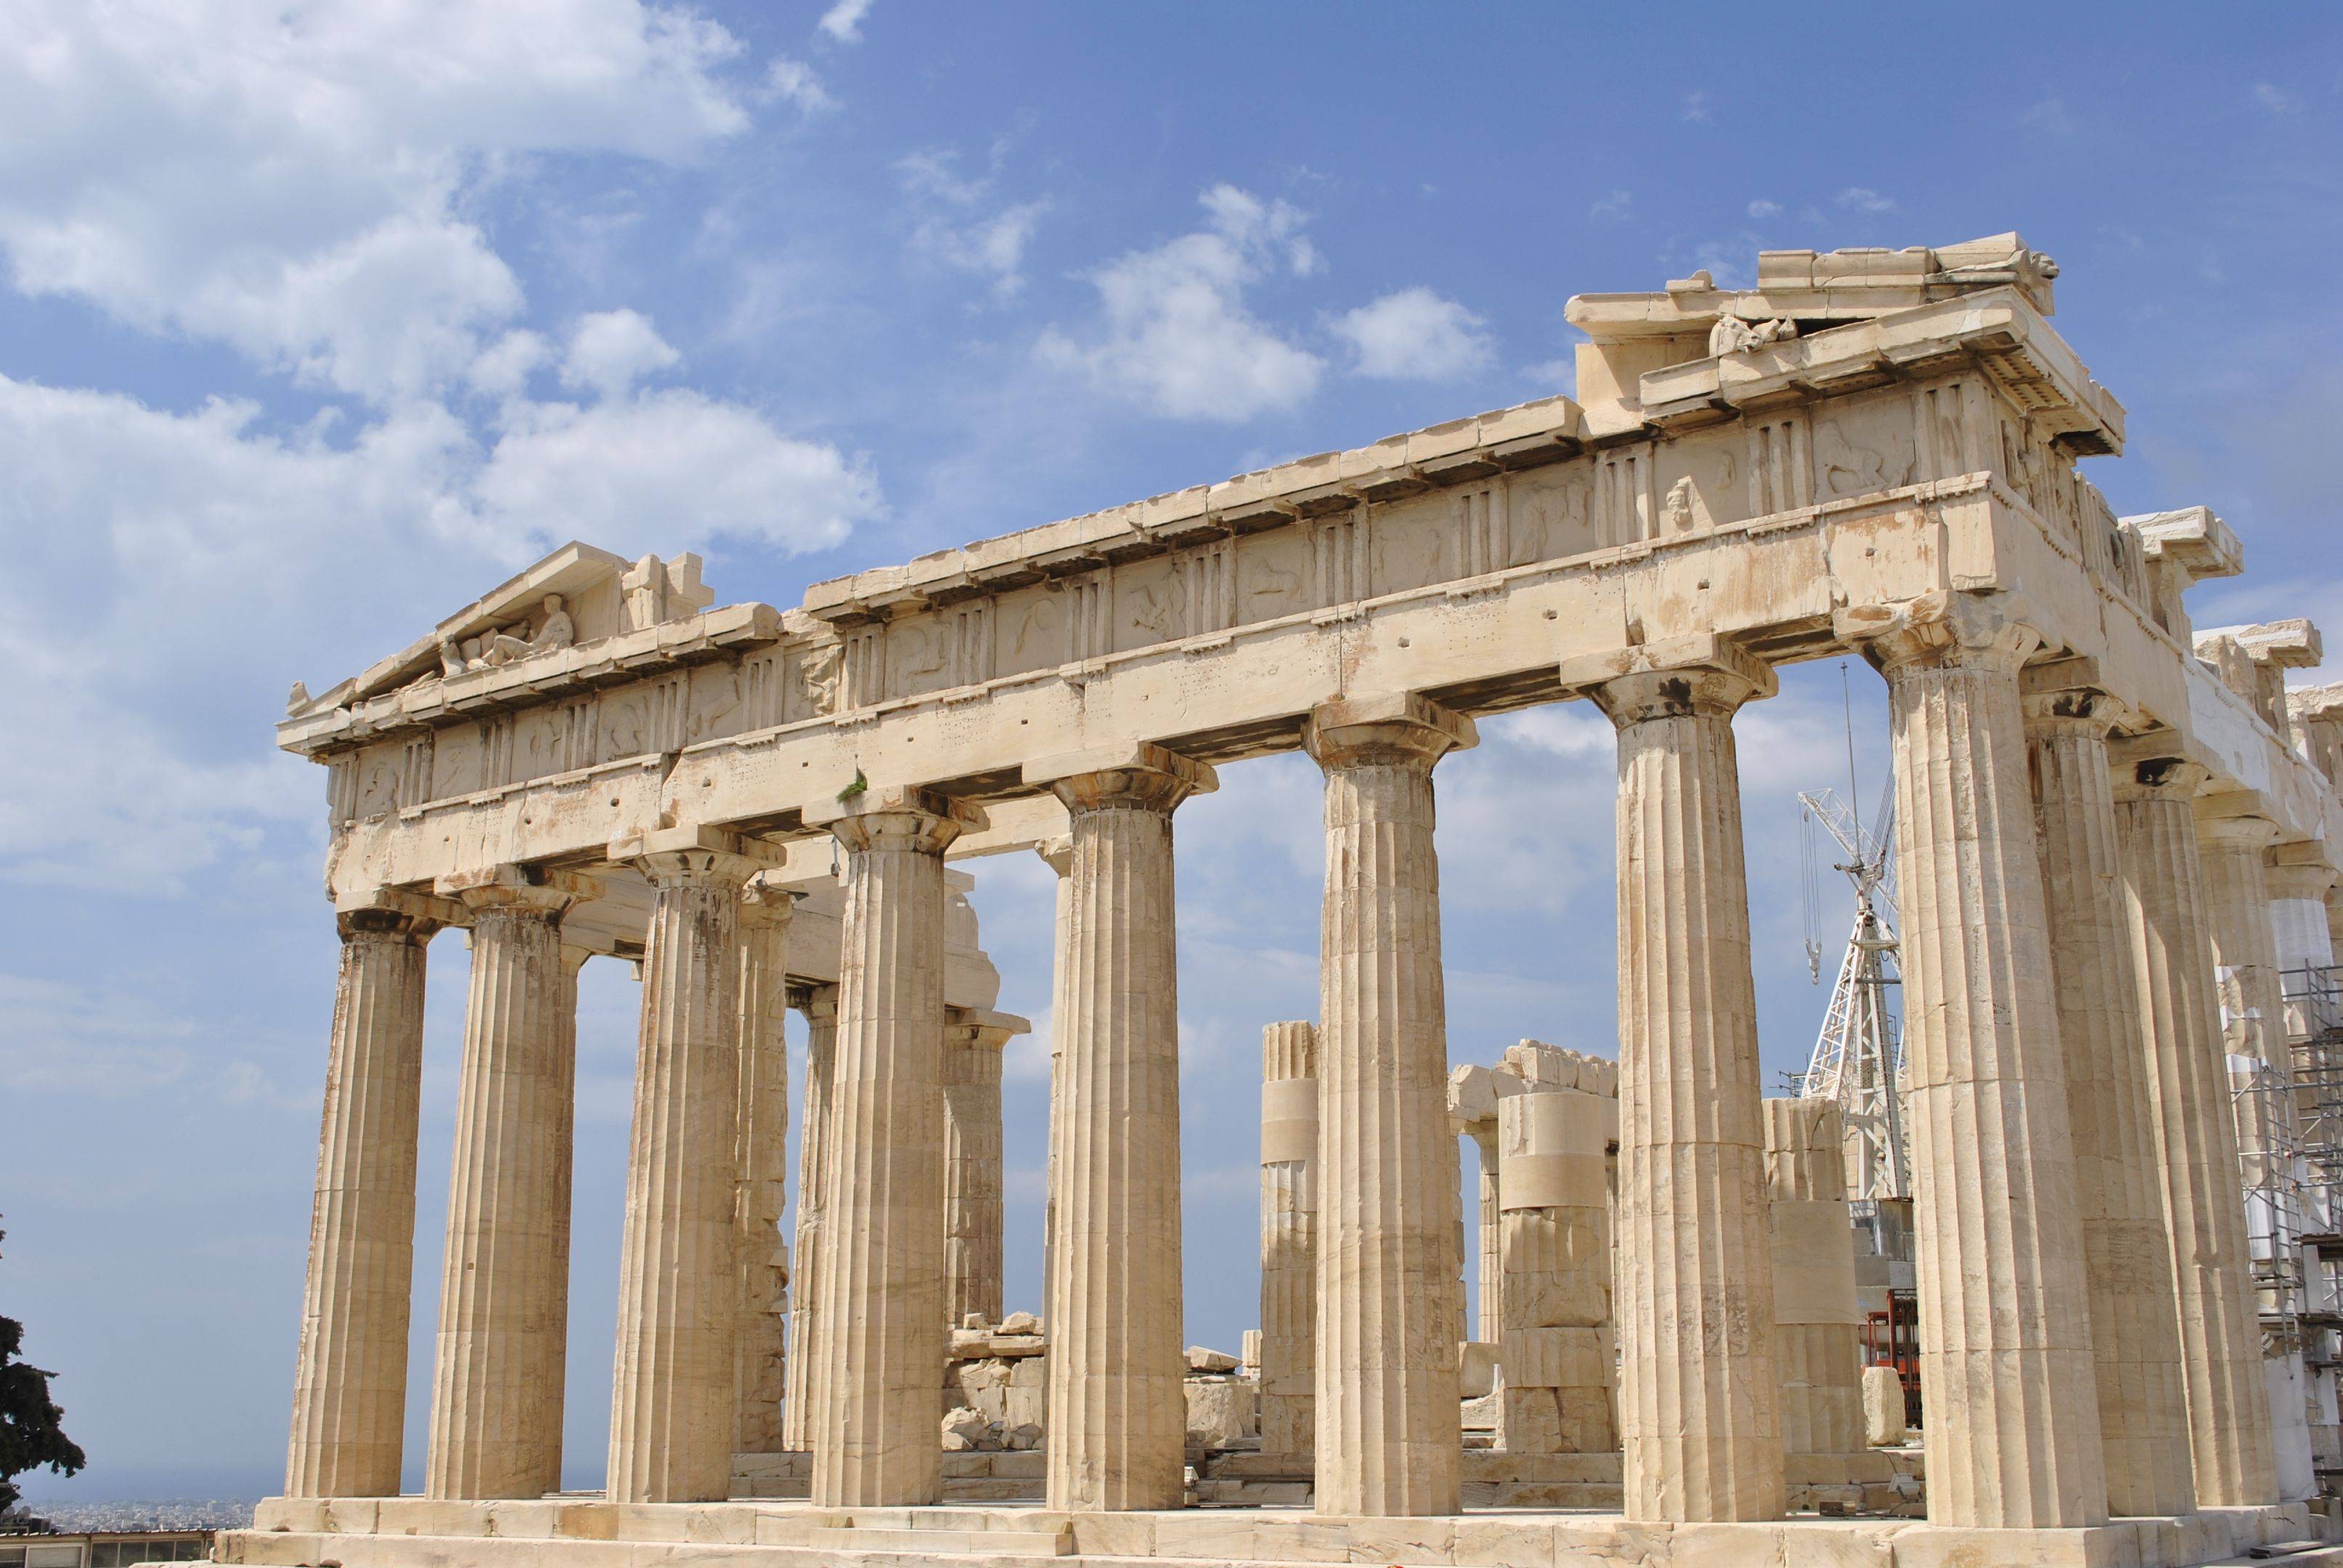 Visita dell’Acropoli e del suo museo con guida archeologica